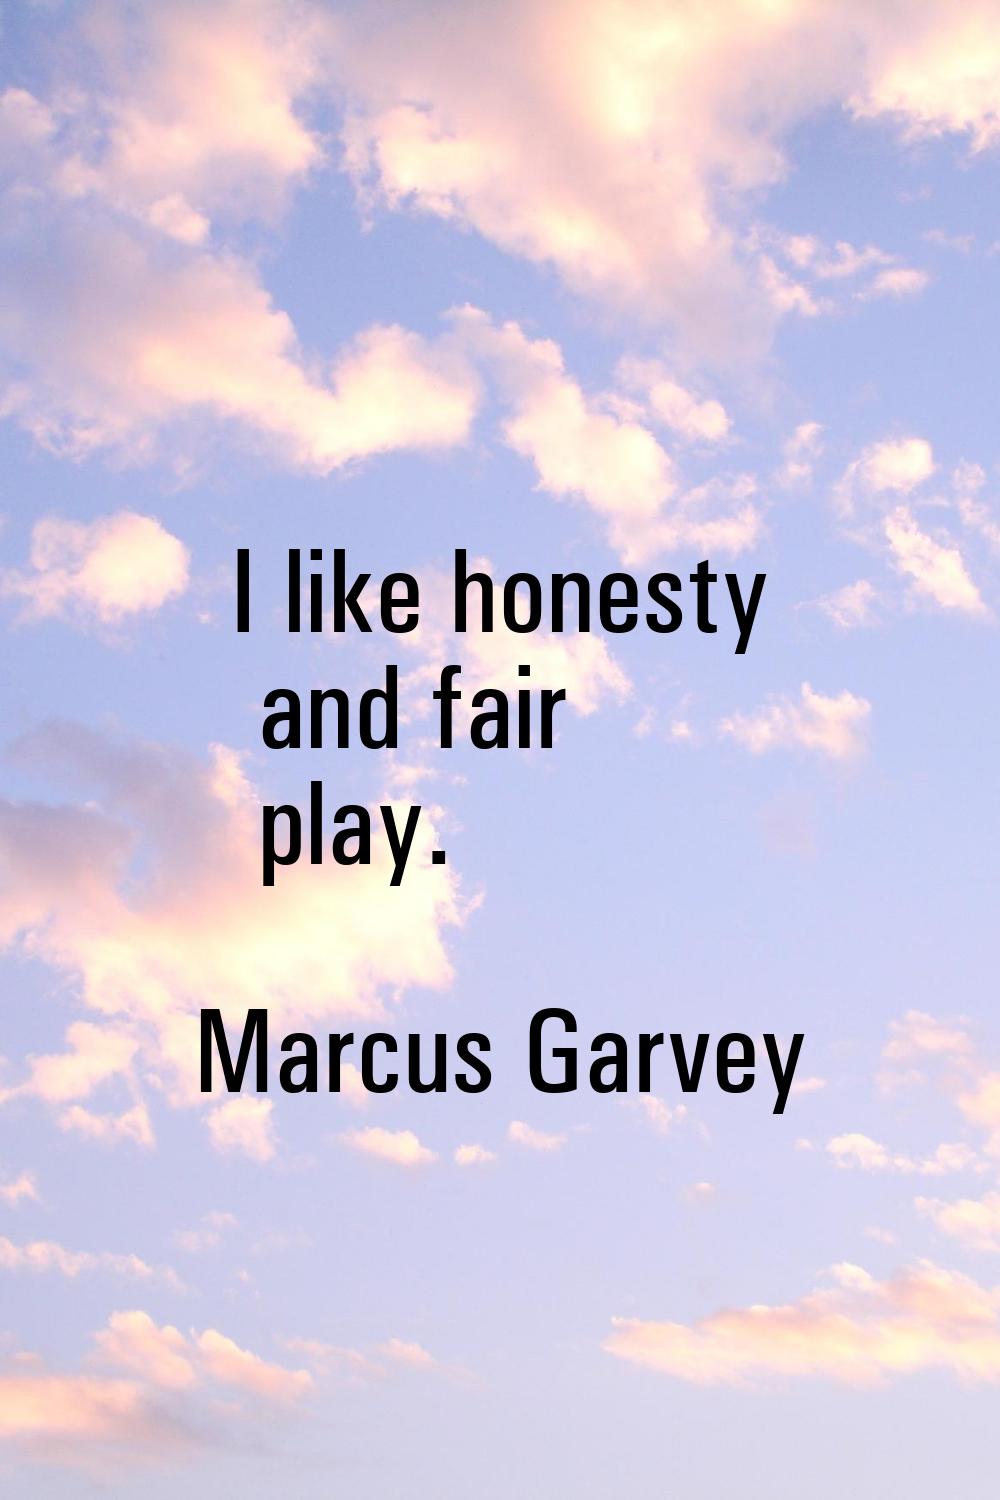 I like honesty and fair play.